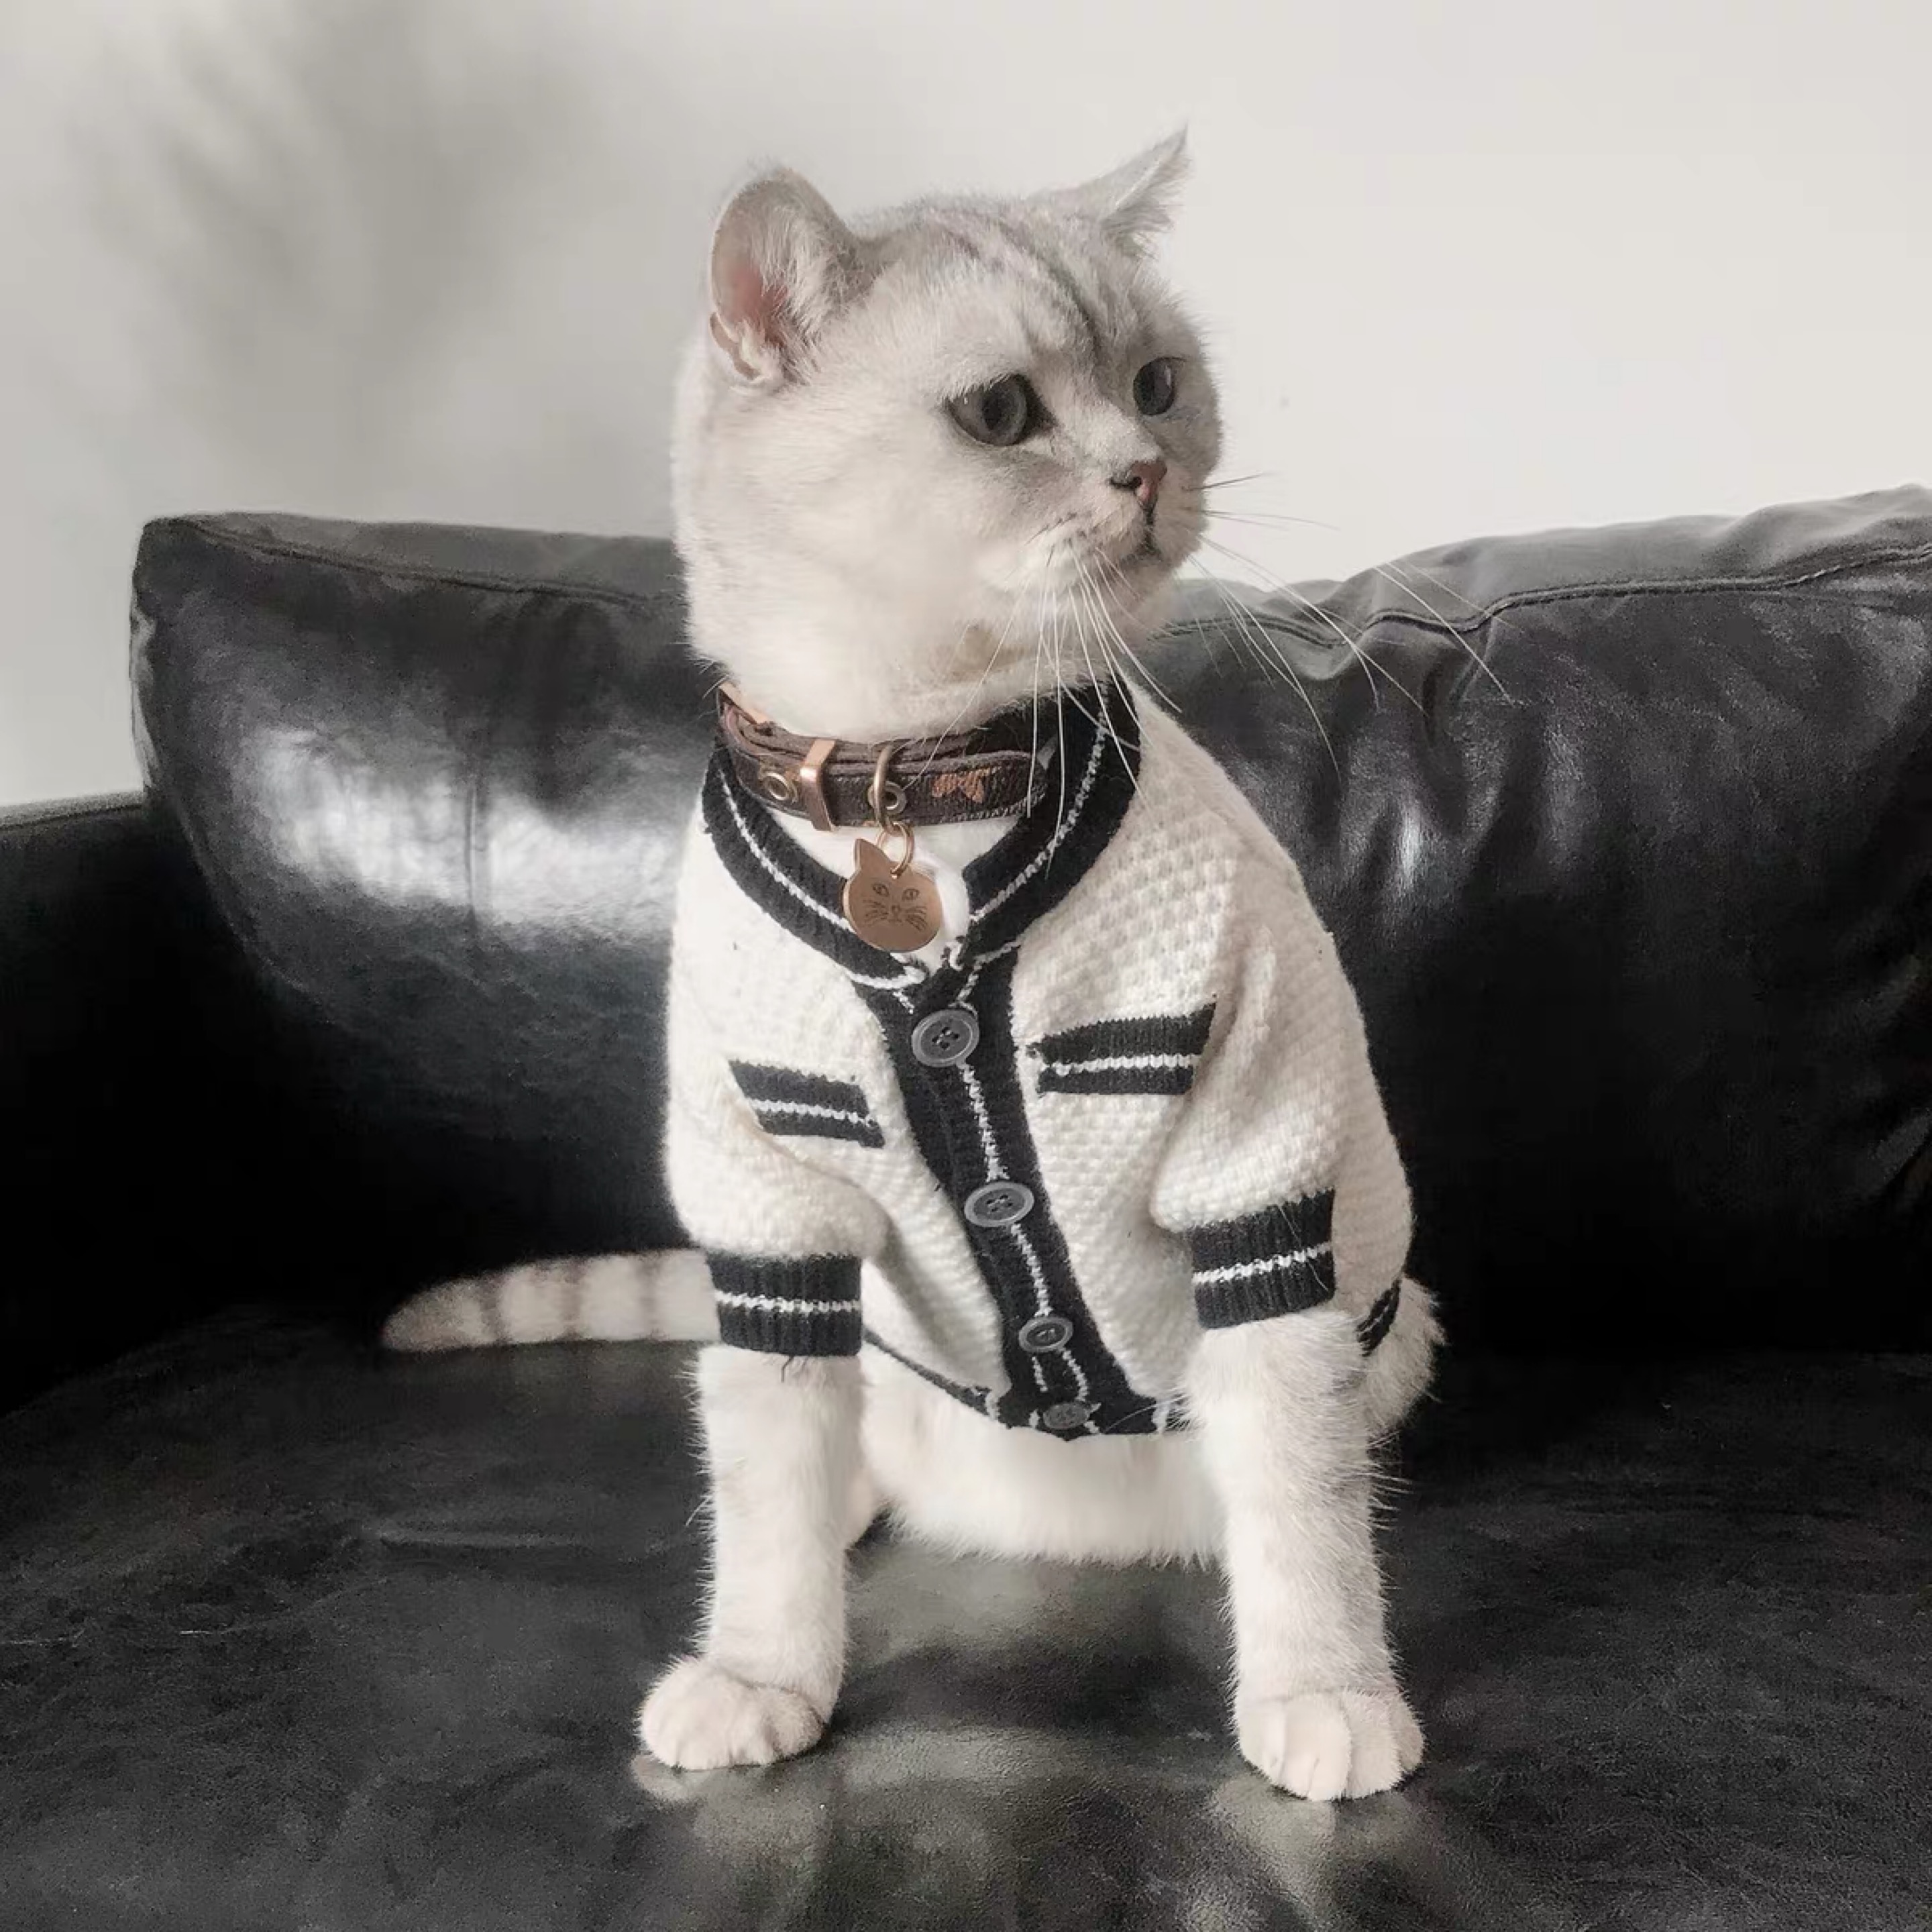 Xiong Xuena Rui Bomei 테디 법률 싸우는 고양이 애완 동물 옷보다 개 옷 가을 겨울 옷 작은 아일렛 스웨터 가디건